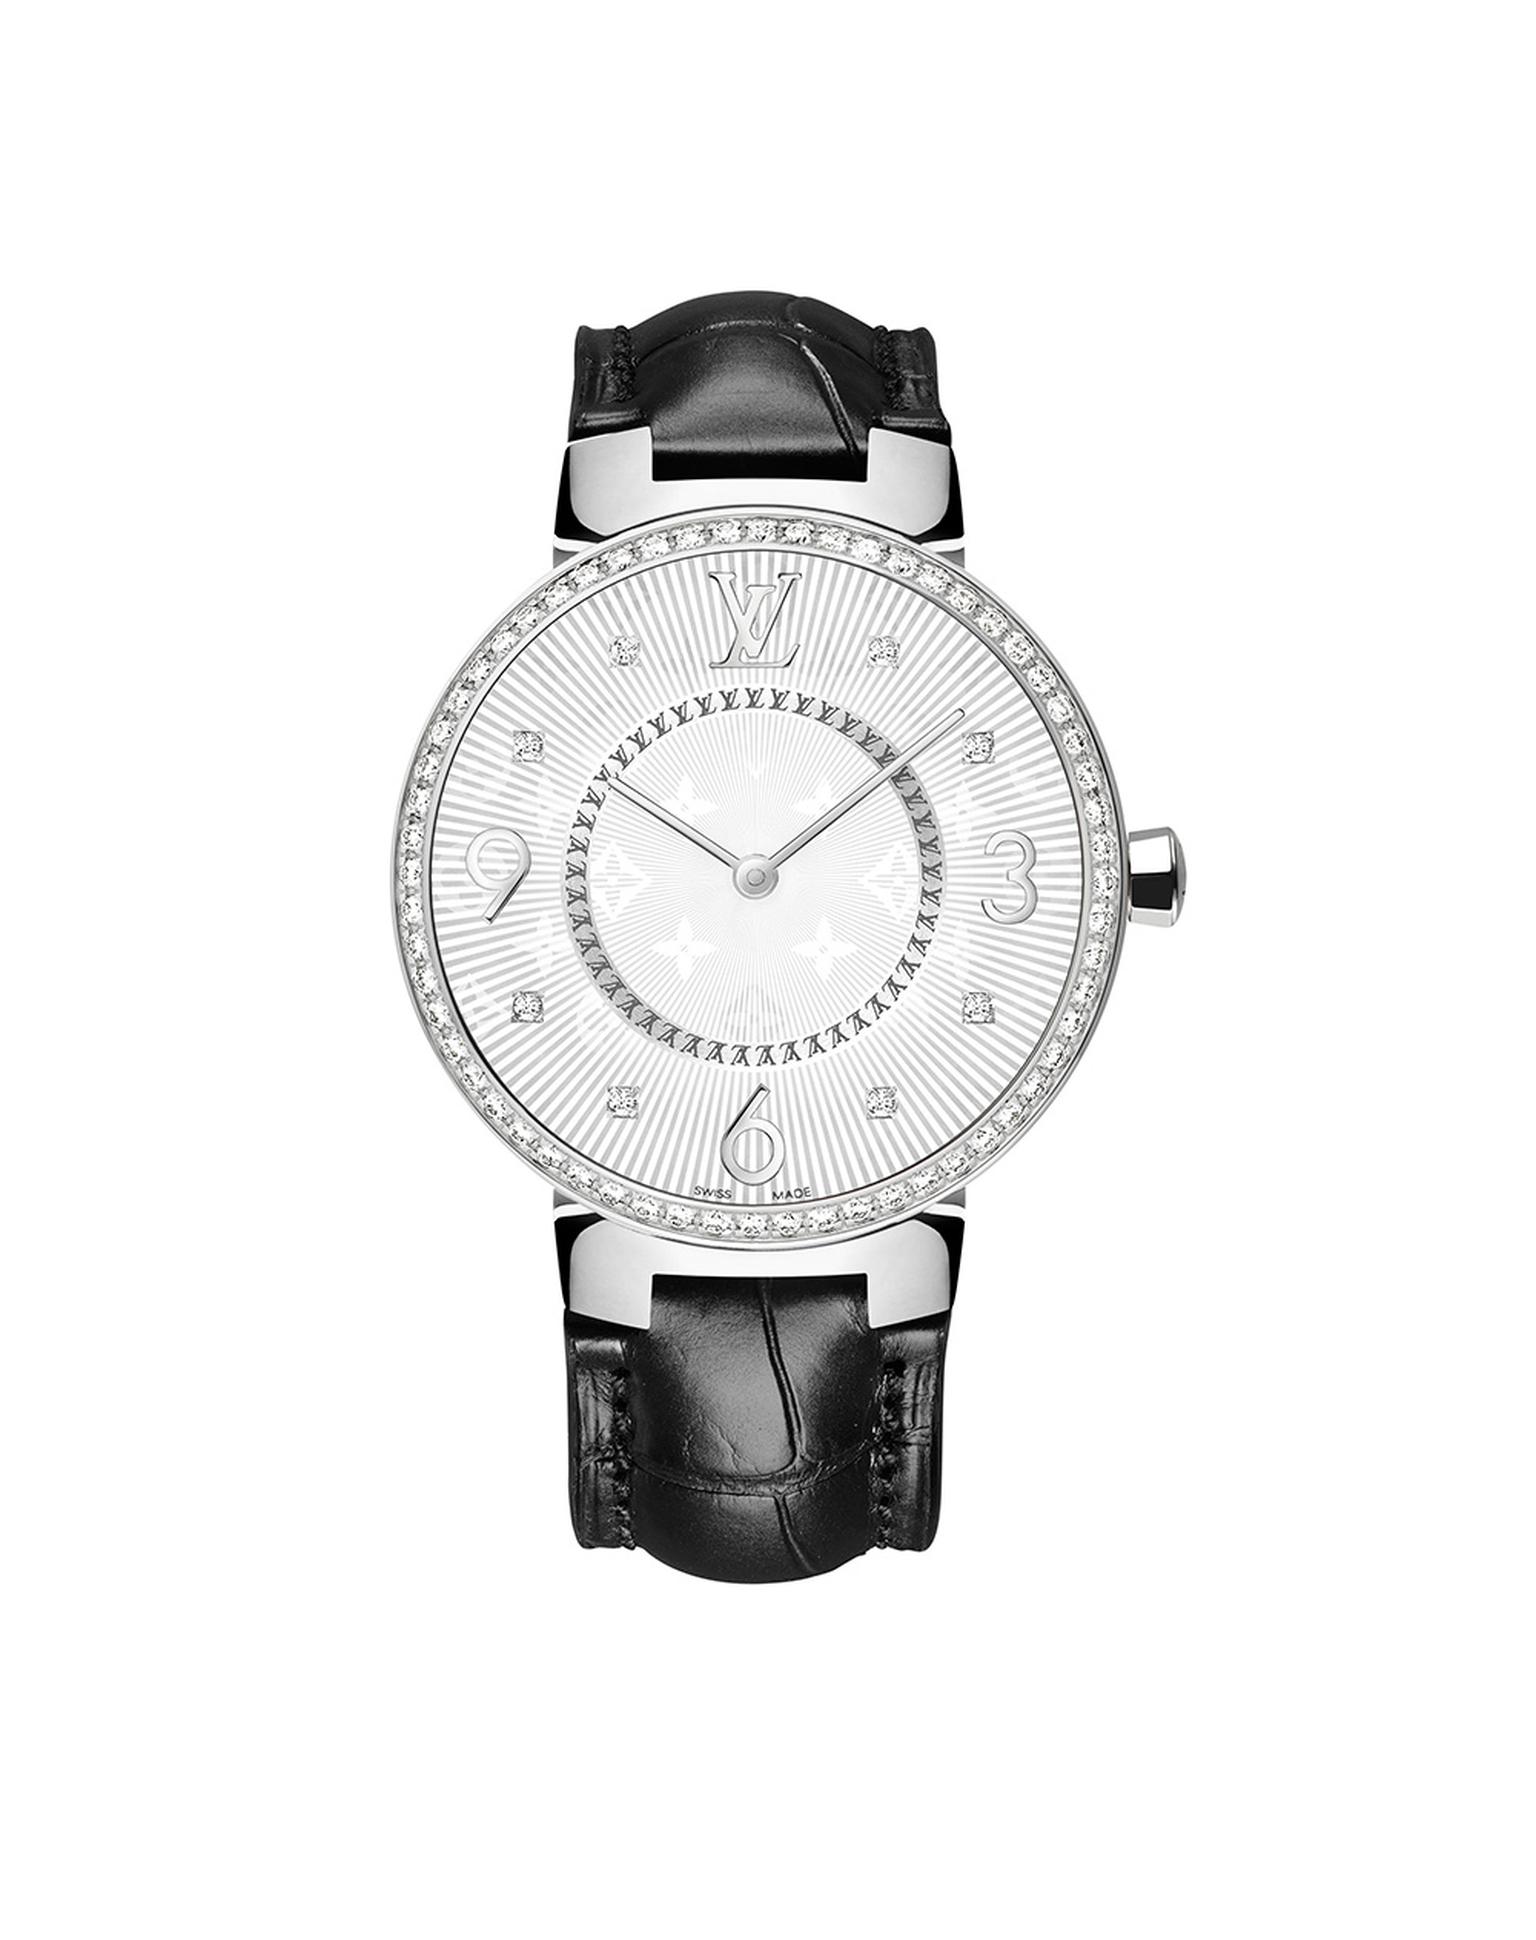 Louis Vuitton Tambour Monogram Acier Serti 33mm watch with a steel case, diamond-set bezel with a quartz movement on a black alligator strap. © LOUIS VUITTON. Auteur: I REEL.